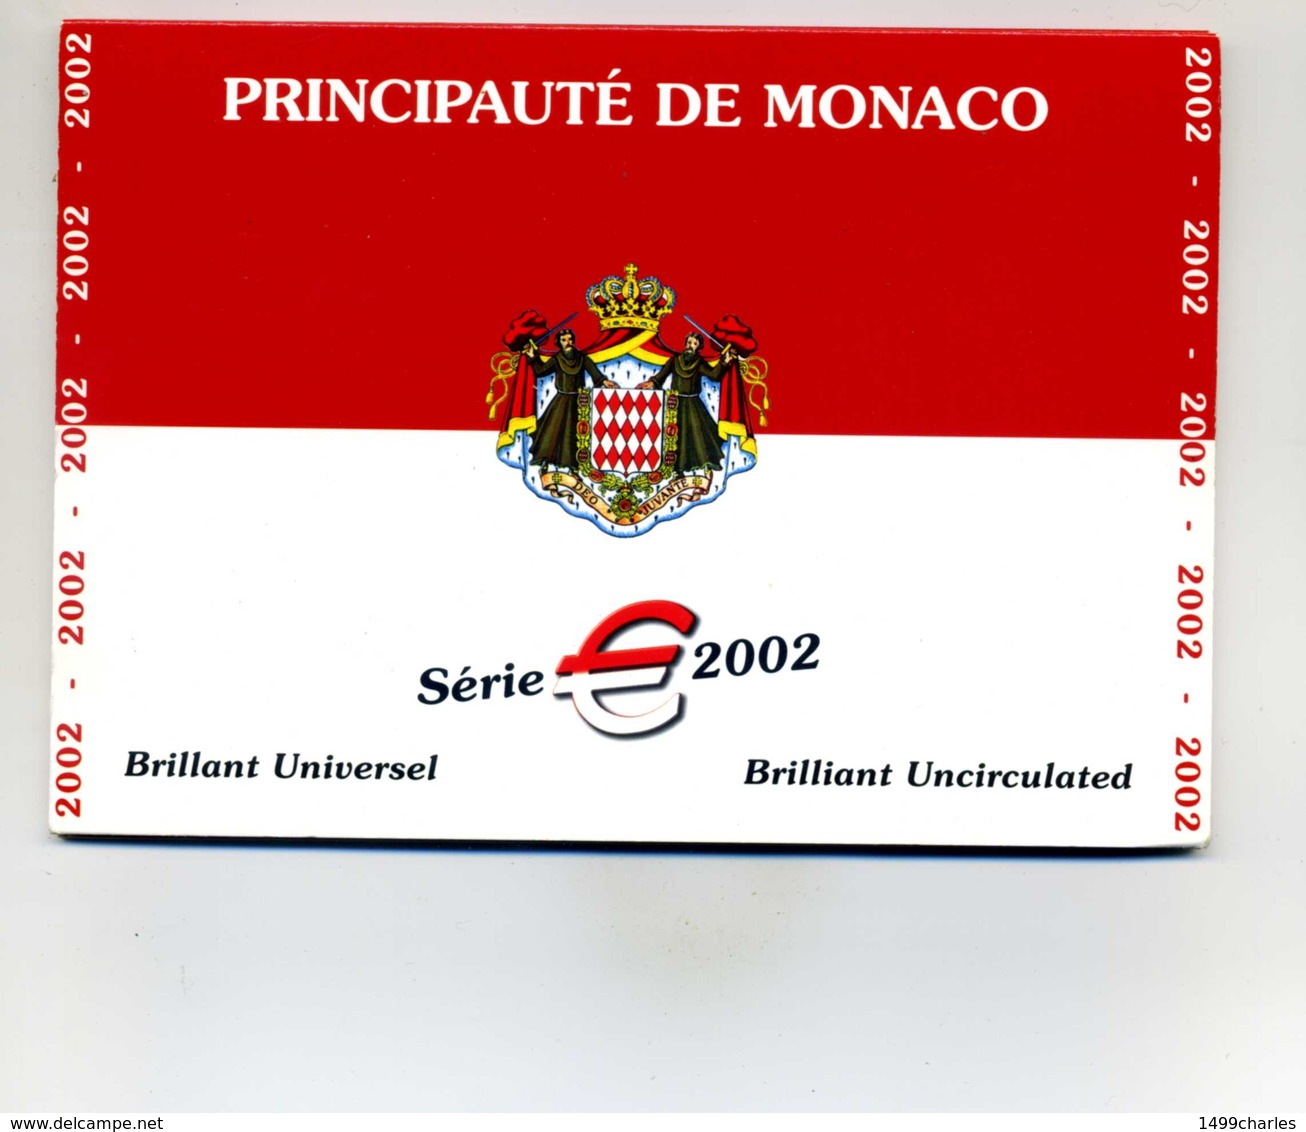 COFFRET MONACO 2002 BRILLANT UNIVERSEL   RARE !!!!!! - Monaco